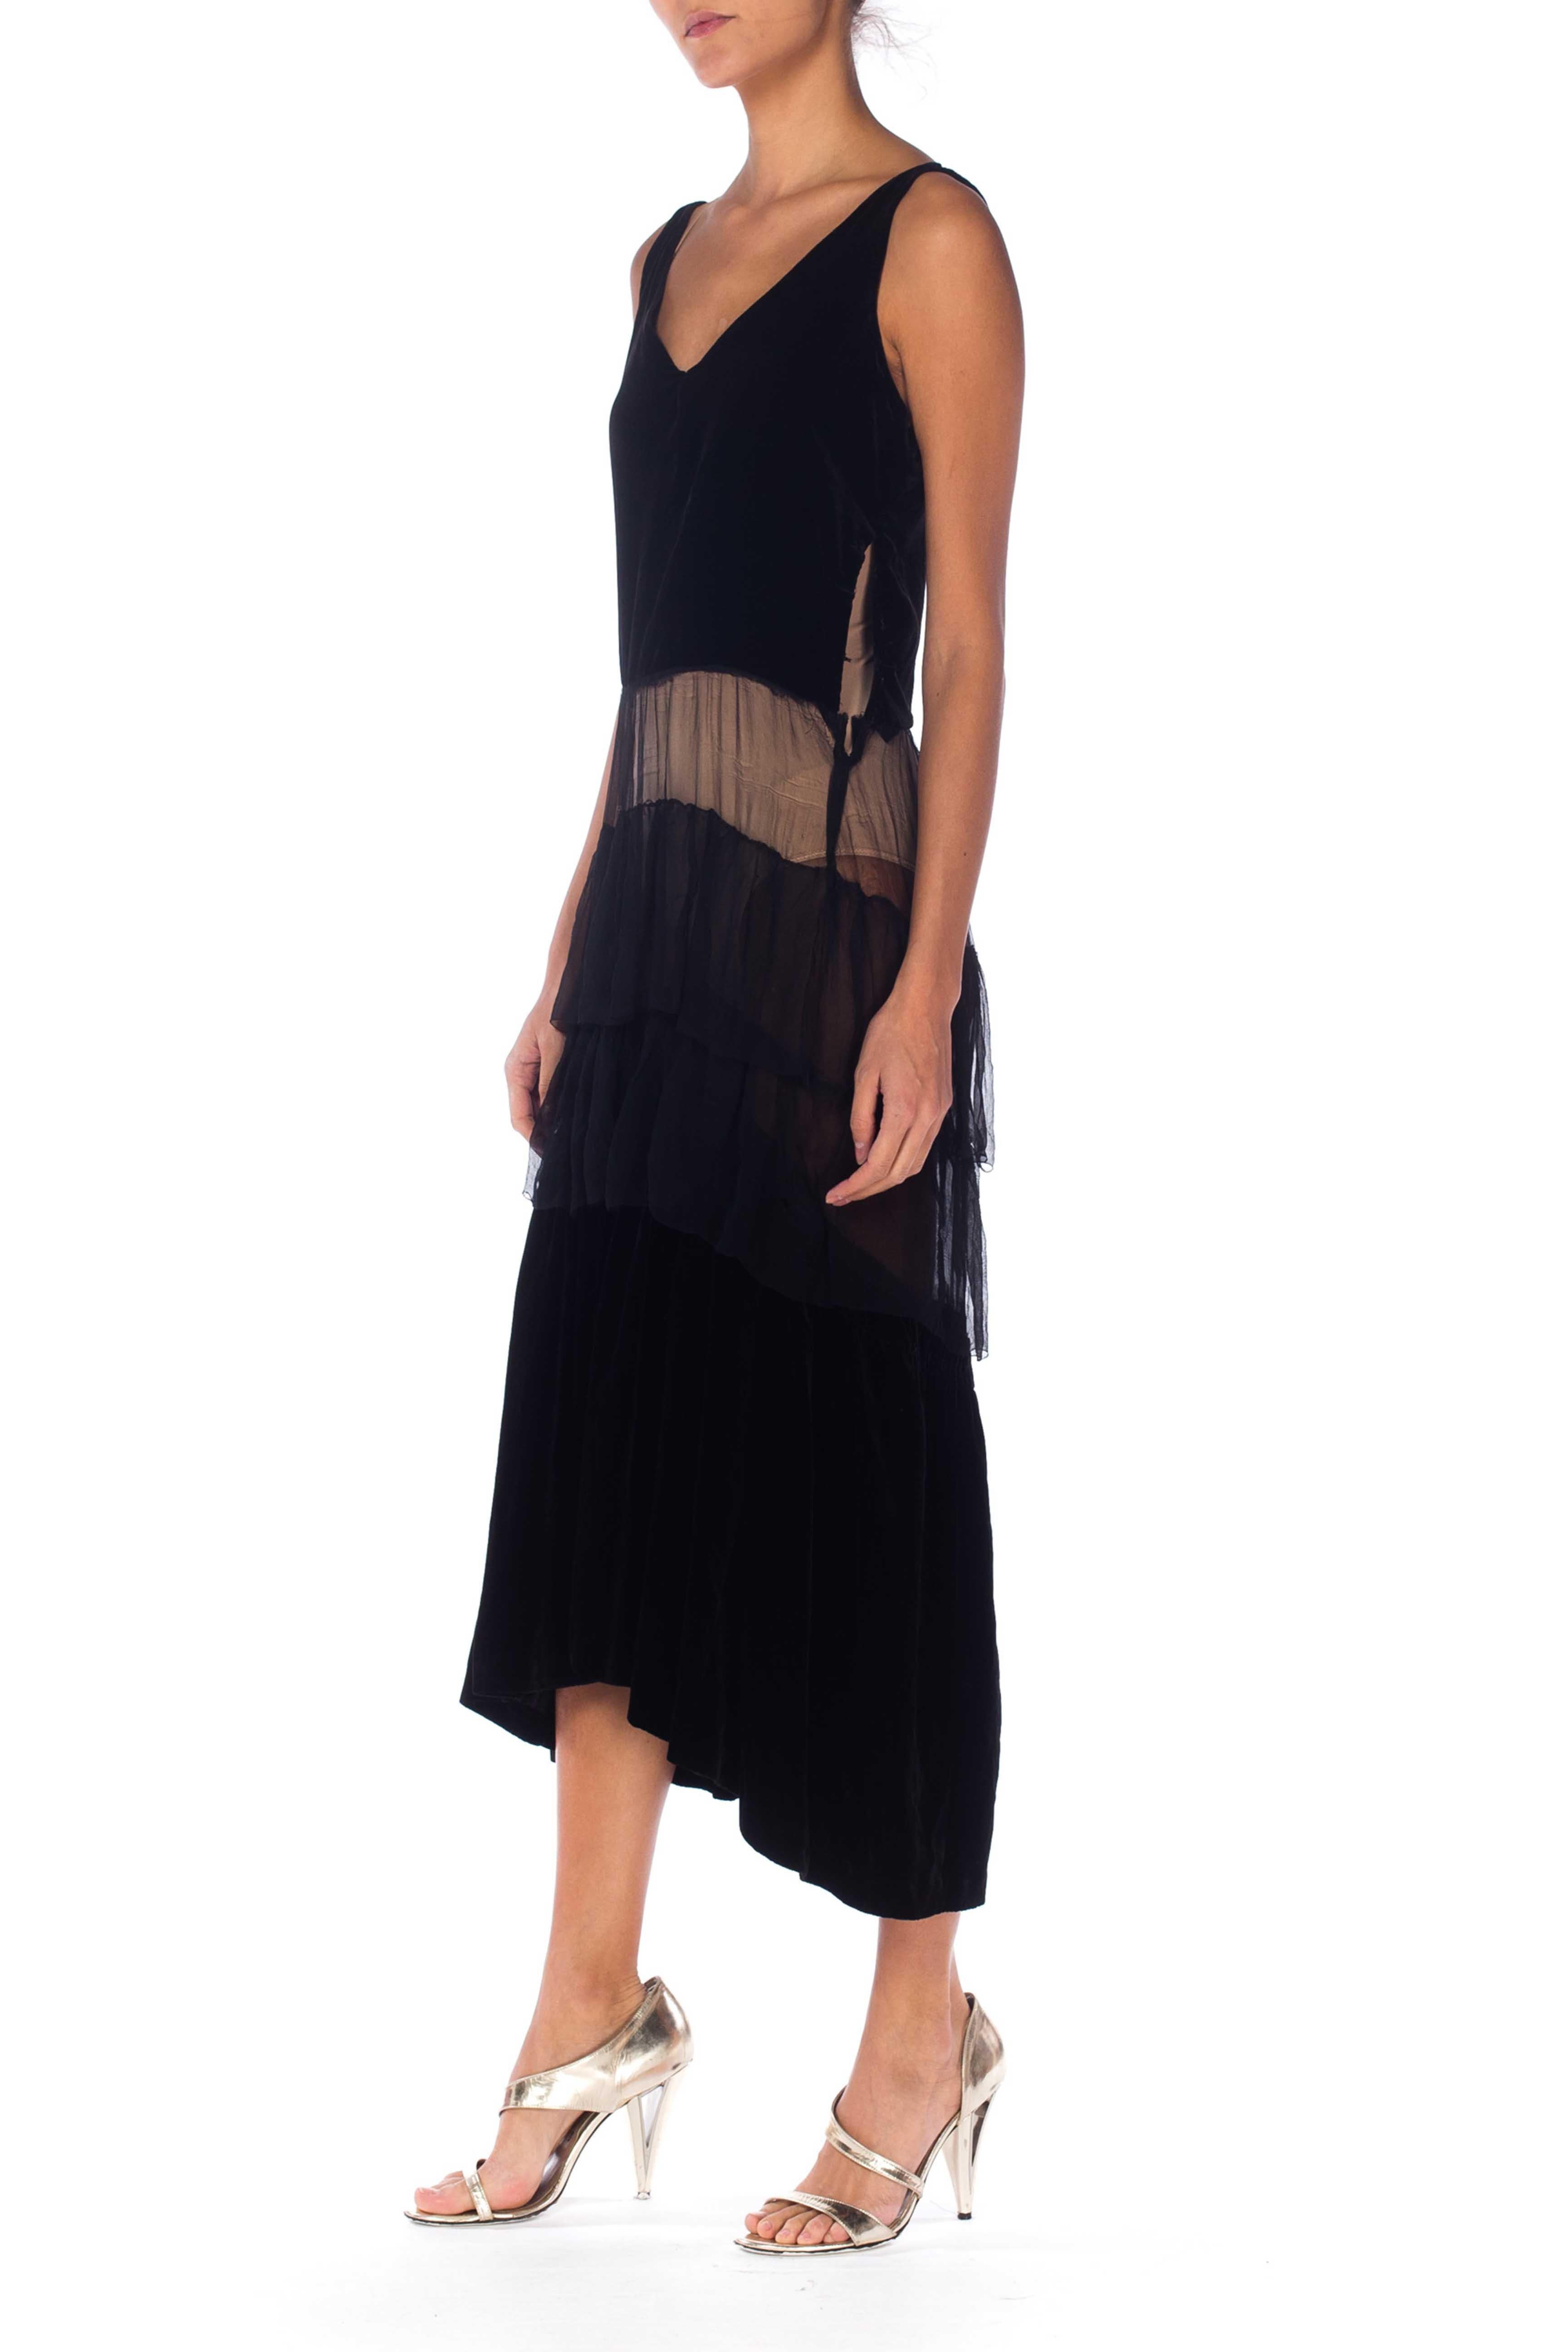 black velvet spaghetti strap dress